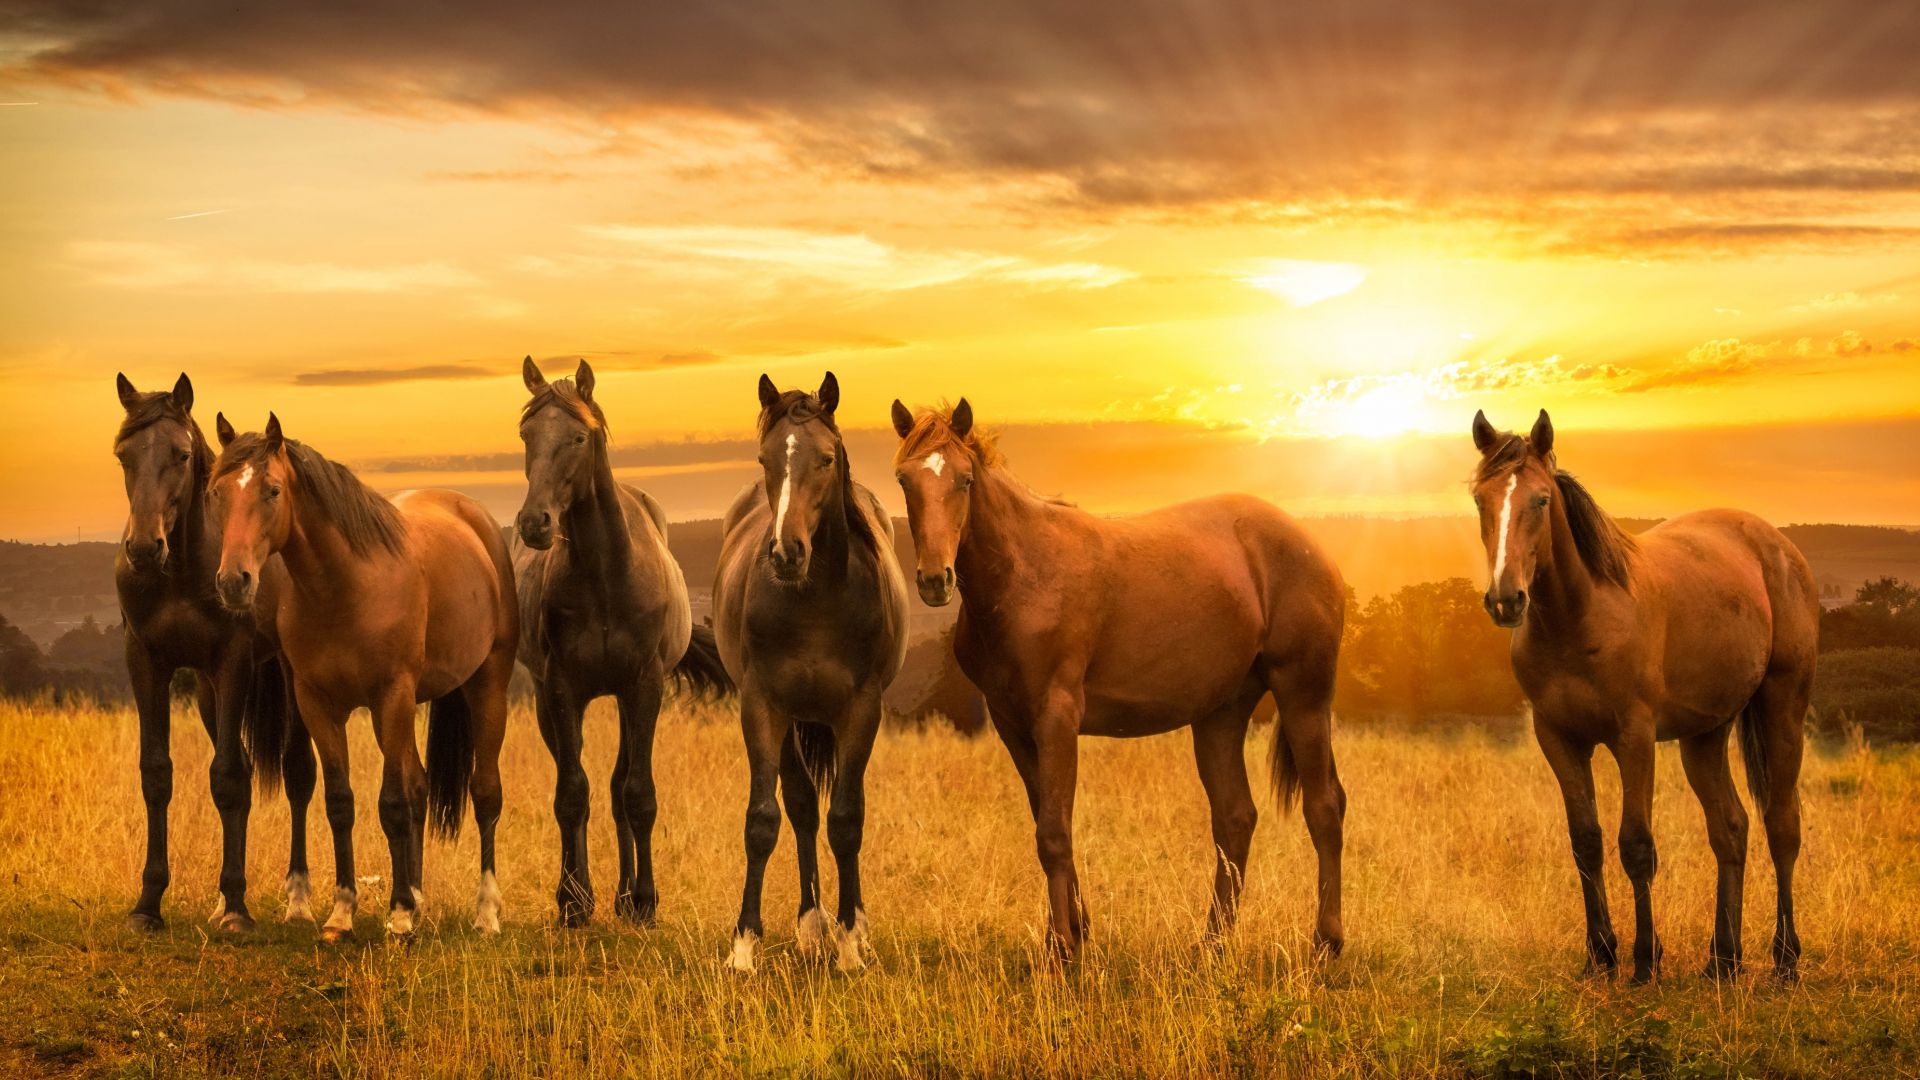 Desktop Wallpaper Horses, Herd, Sunset, Landscape, 4k, HD Image, Picture, Background, Cd8fb8